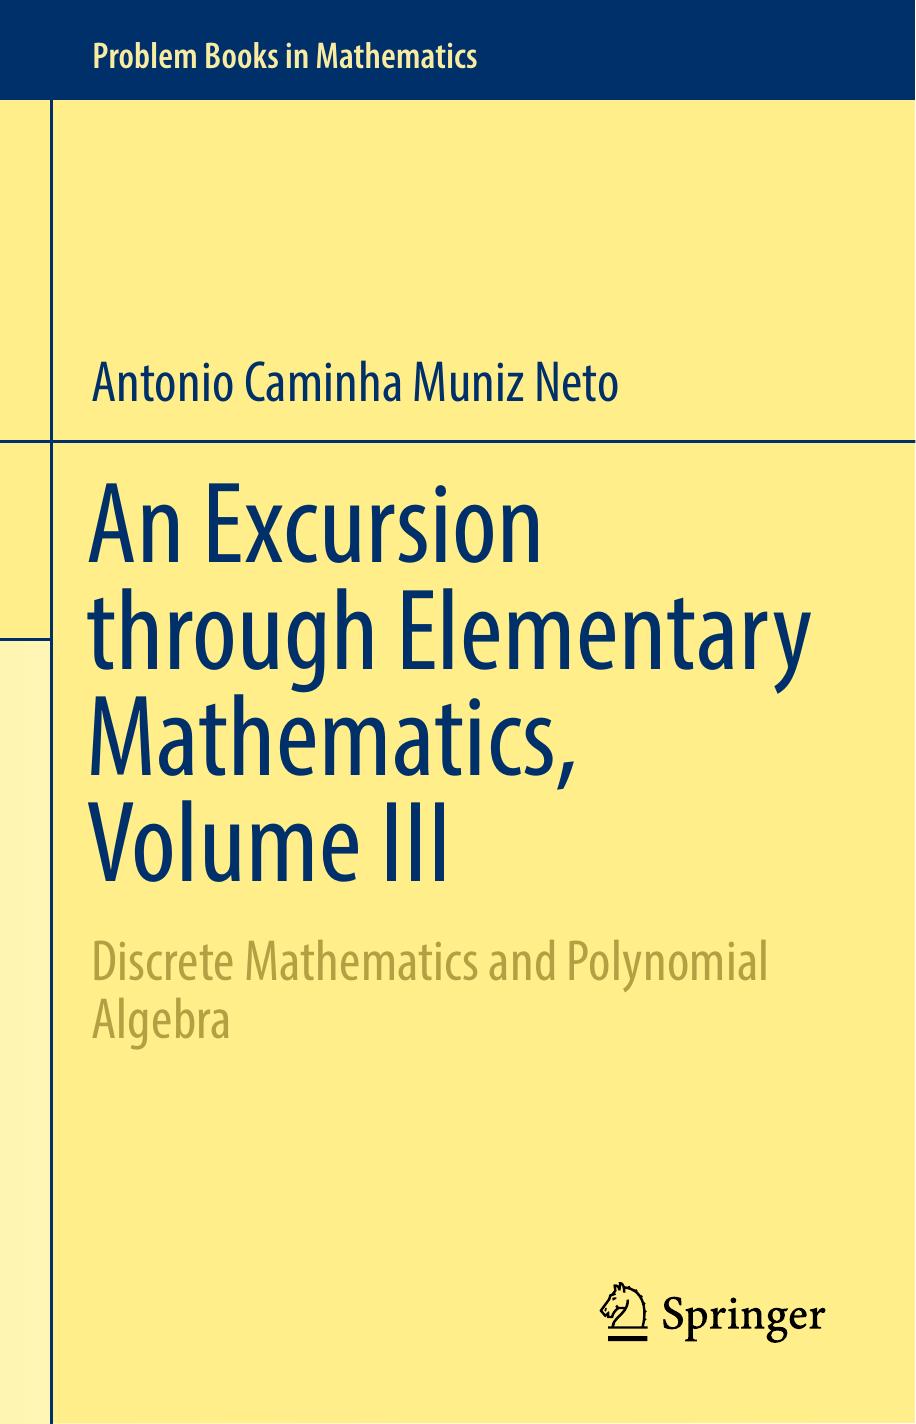 An Excursion through Elementary Mathematics, Volume III, 2018